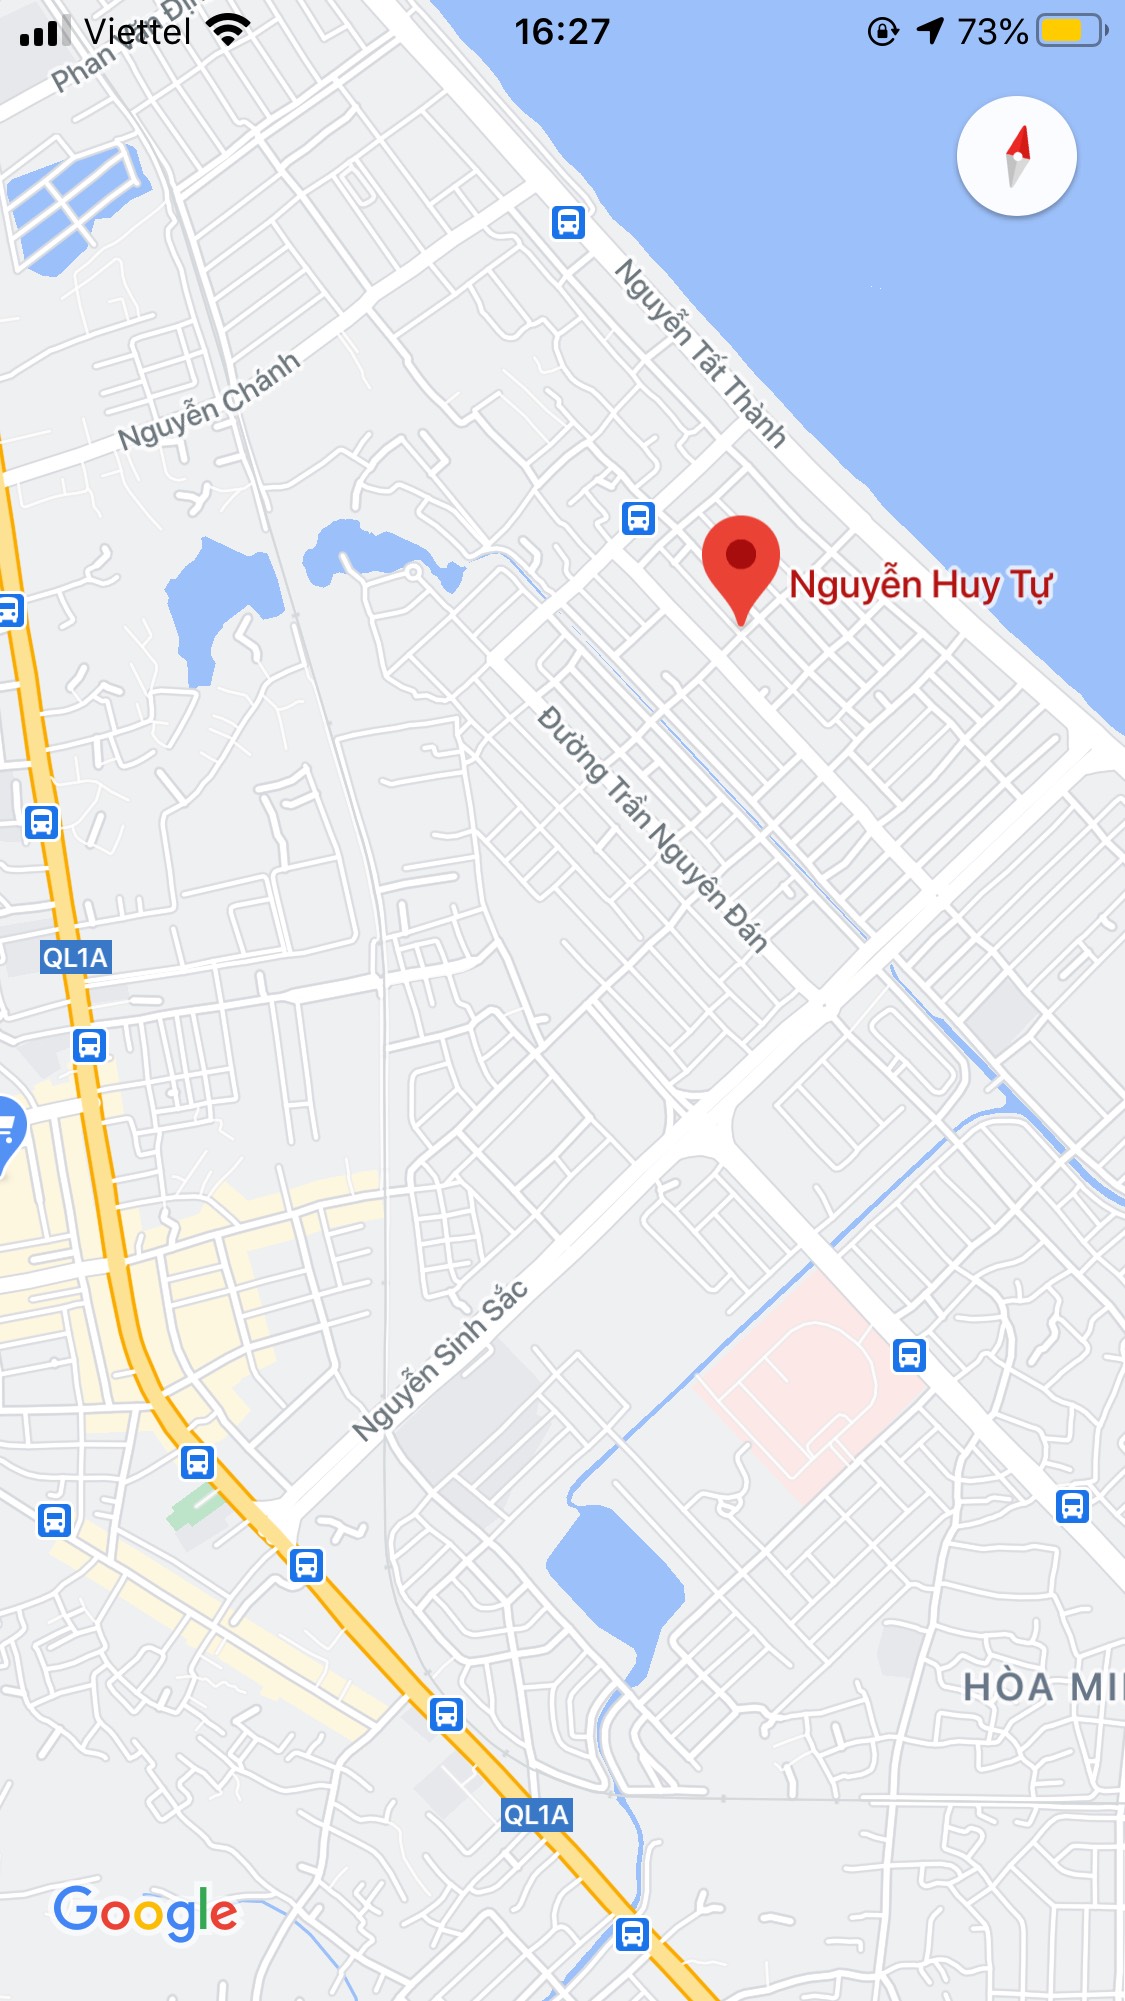 Bán nhà đất đường Nguyễn Huy Tự, Phường Hòa Minh, Quận Liên Chiểu. DT: 72 m2, giá: 2,8 tỷ